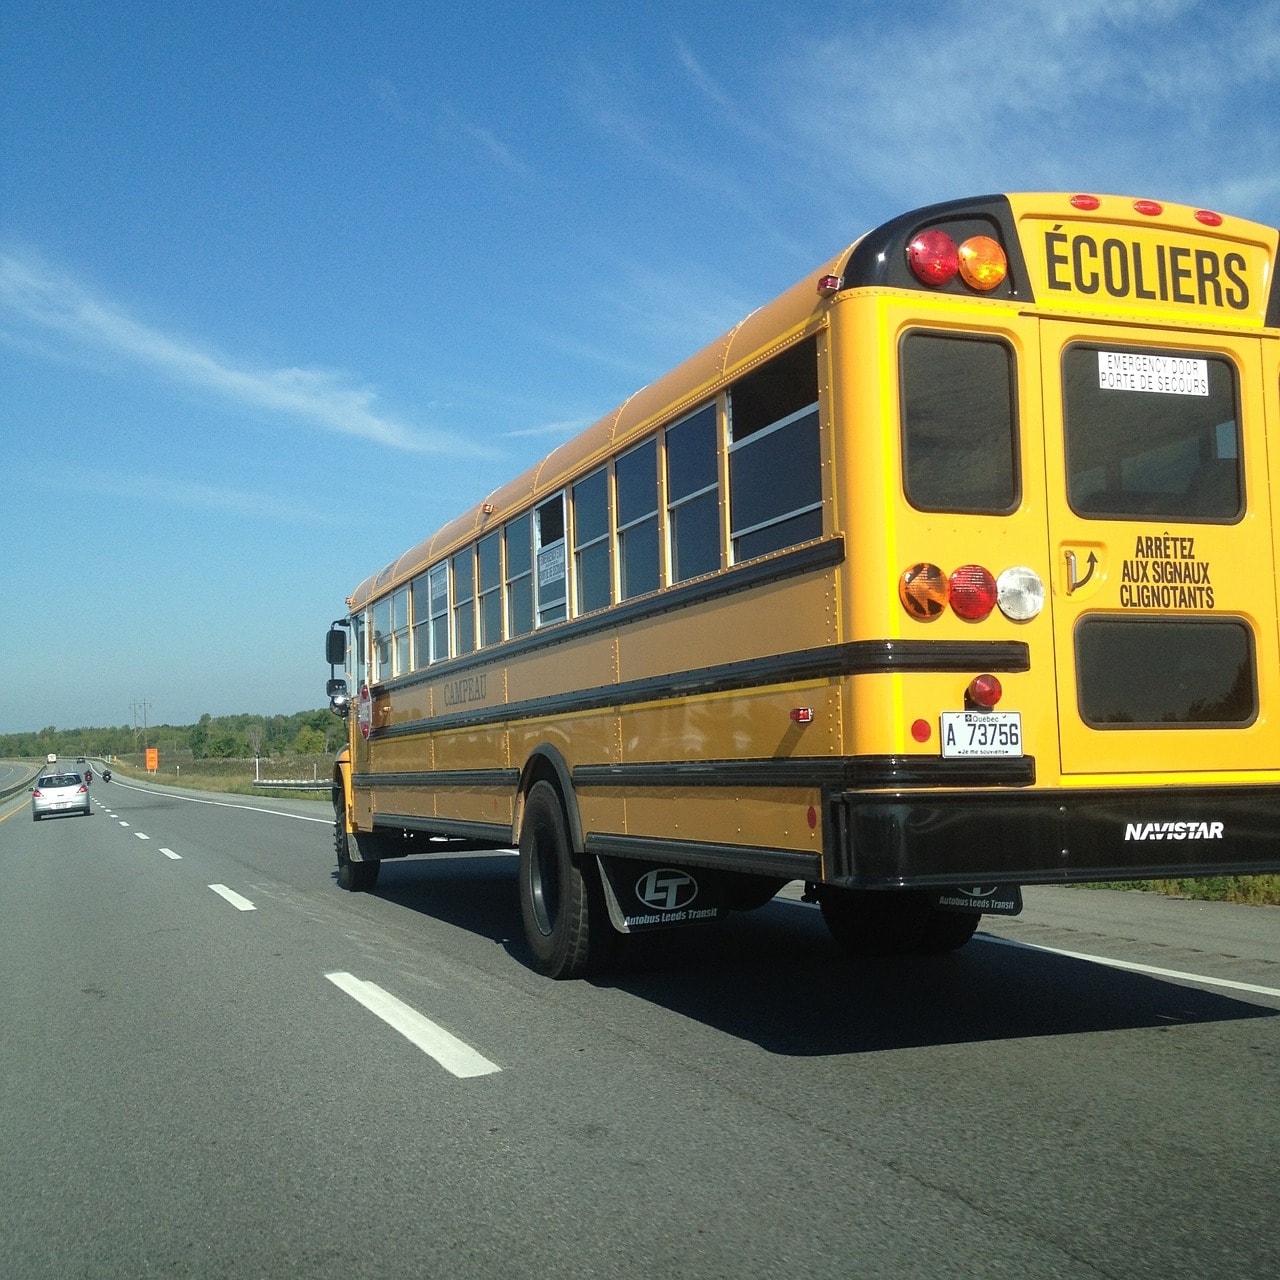 Autobus scolaire sur la route. Automobiliste, soyez prudent. 